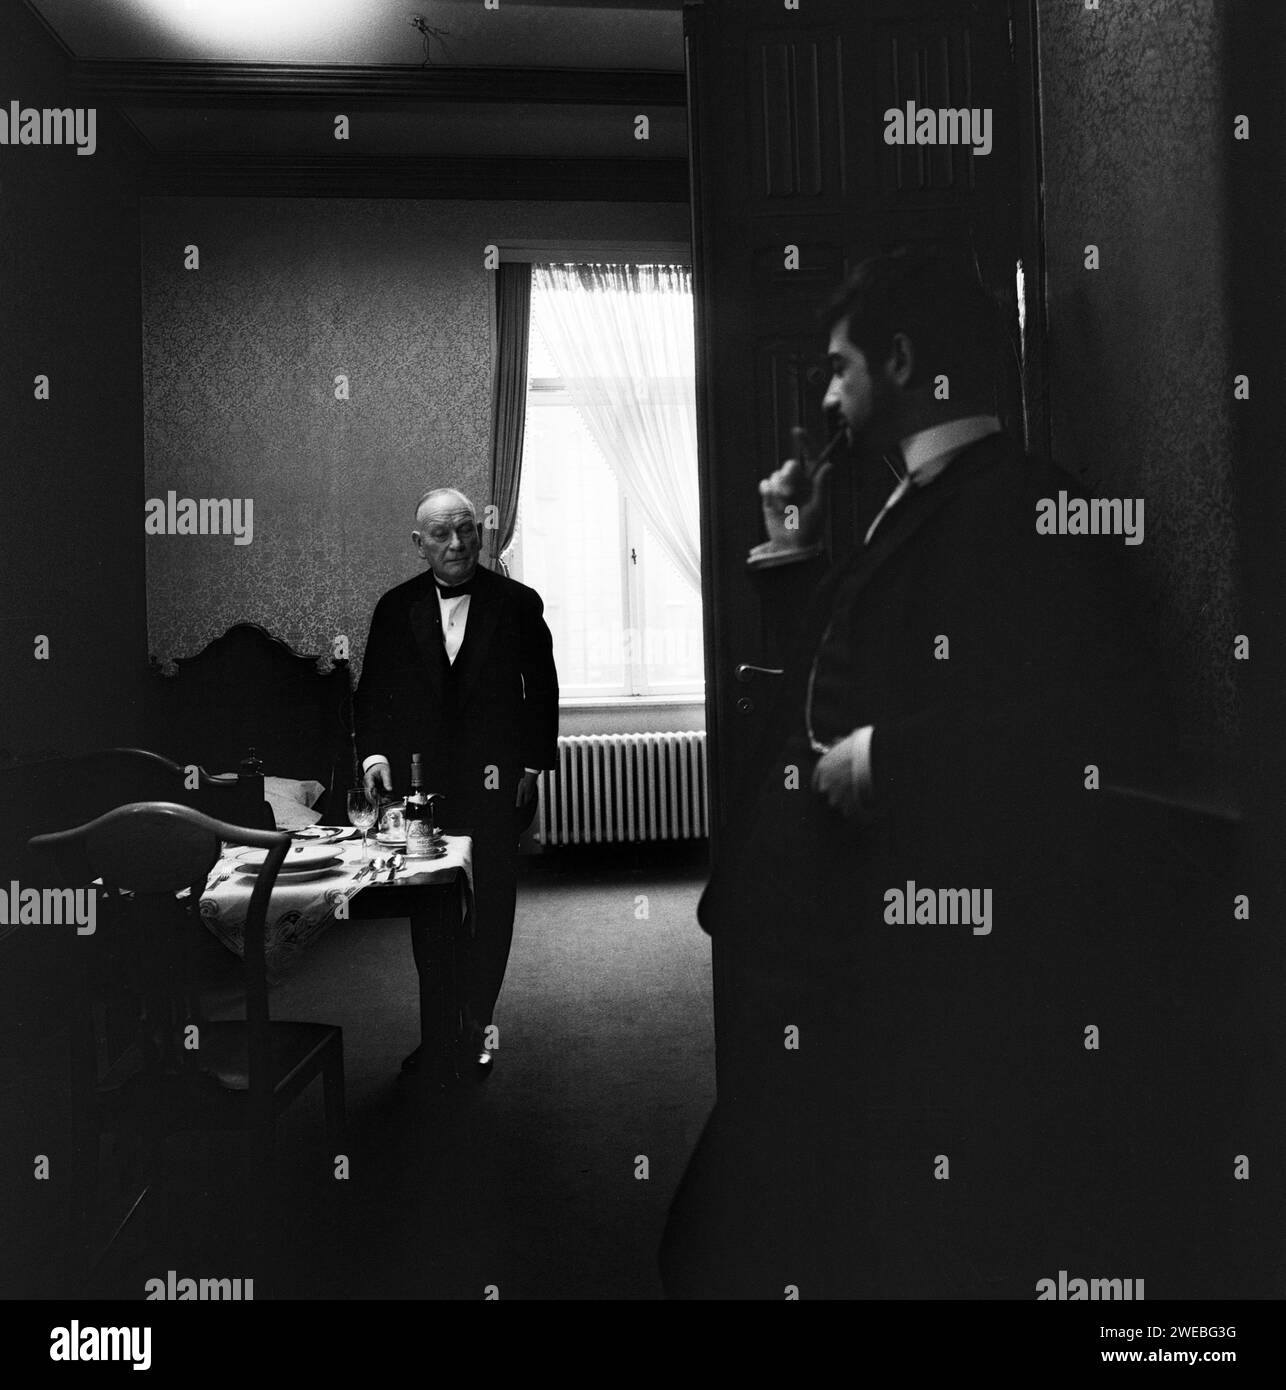 Tonio Kröger, Spielfilm nach dem gleichnamigen Roman von Thomas Mann, Deutschland 1964, Regie: Rolf Thiele, Darsteller: Jean Claude Brialy (rechts) Stock Photo